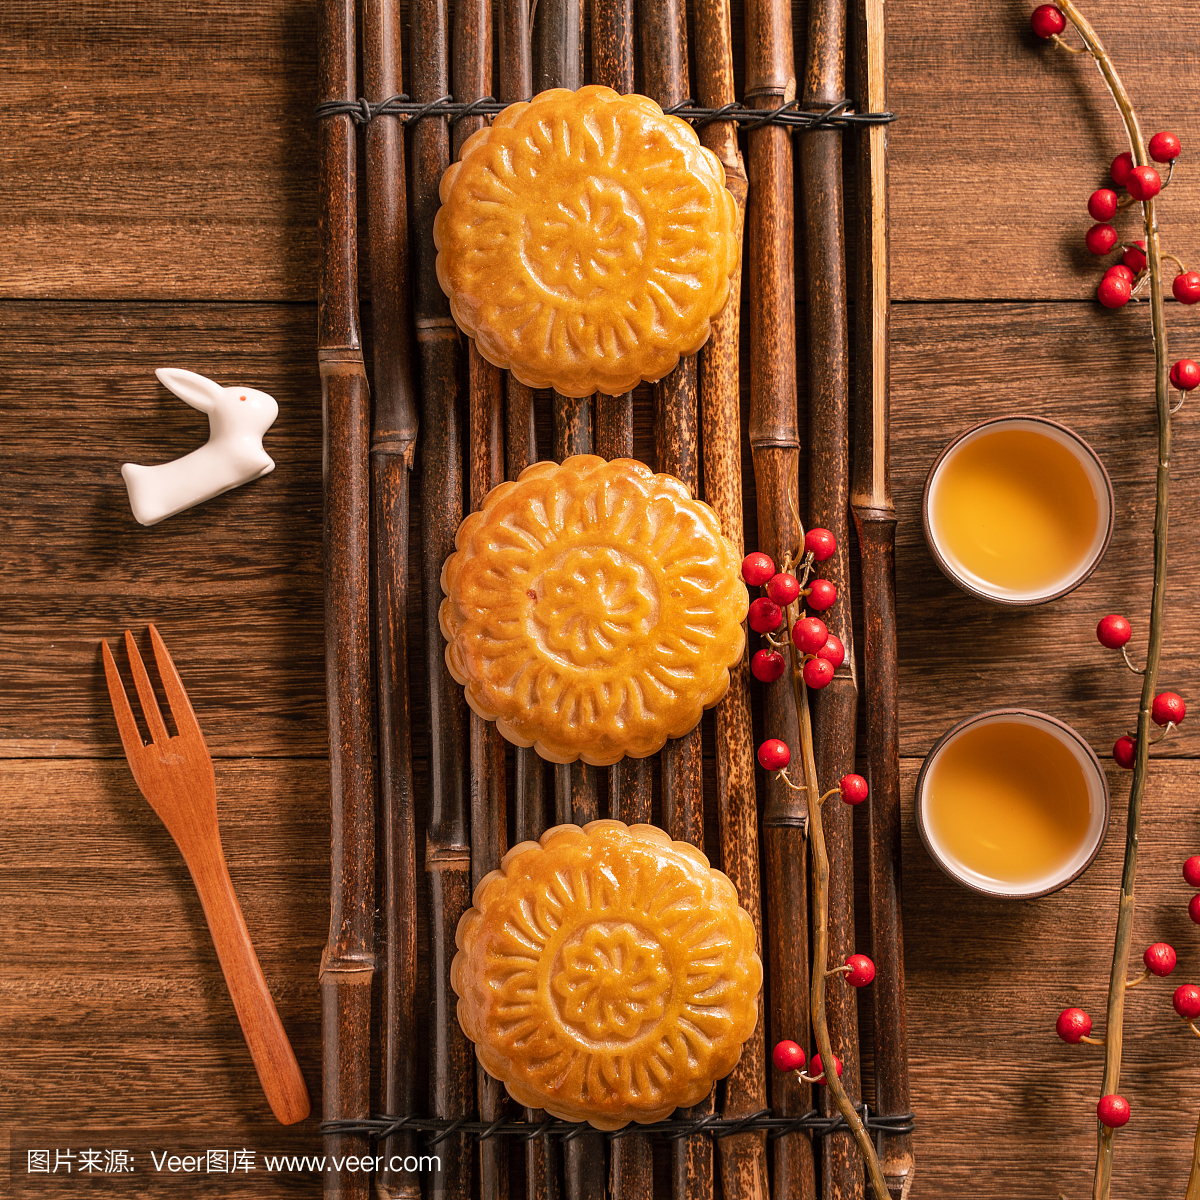 月饼桌设计-中国传统糕点与茶杯木制背景,中秋节概念,俯视图,平铺。